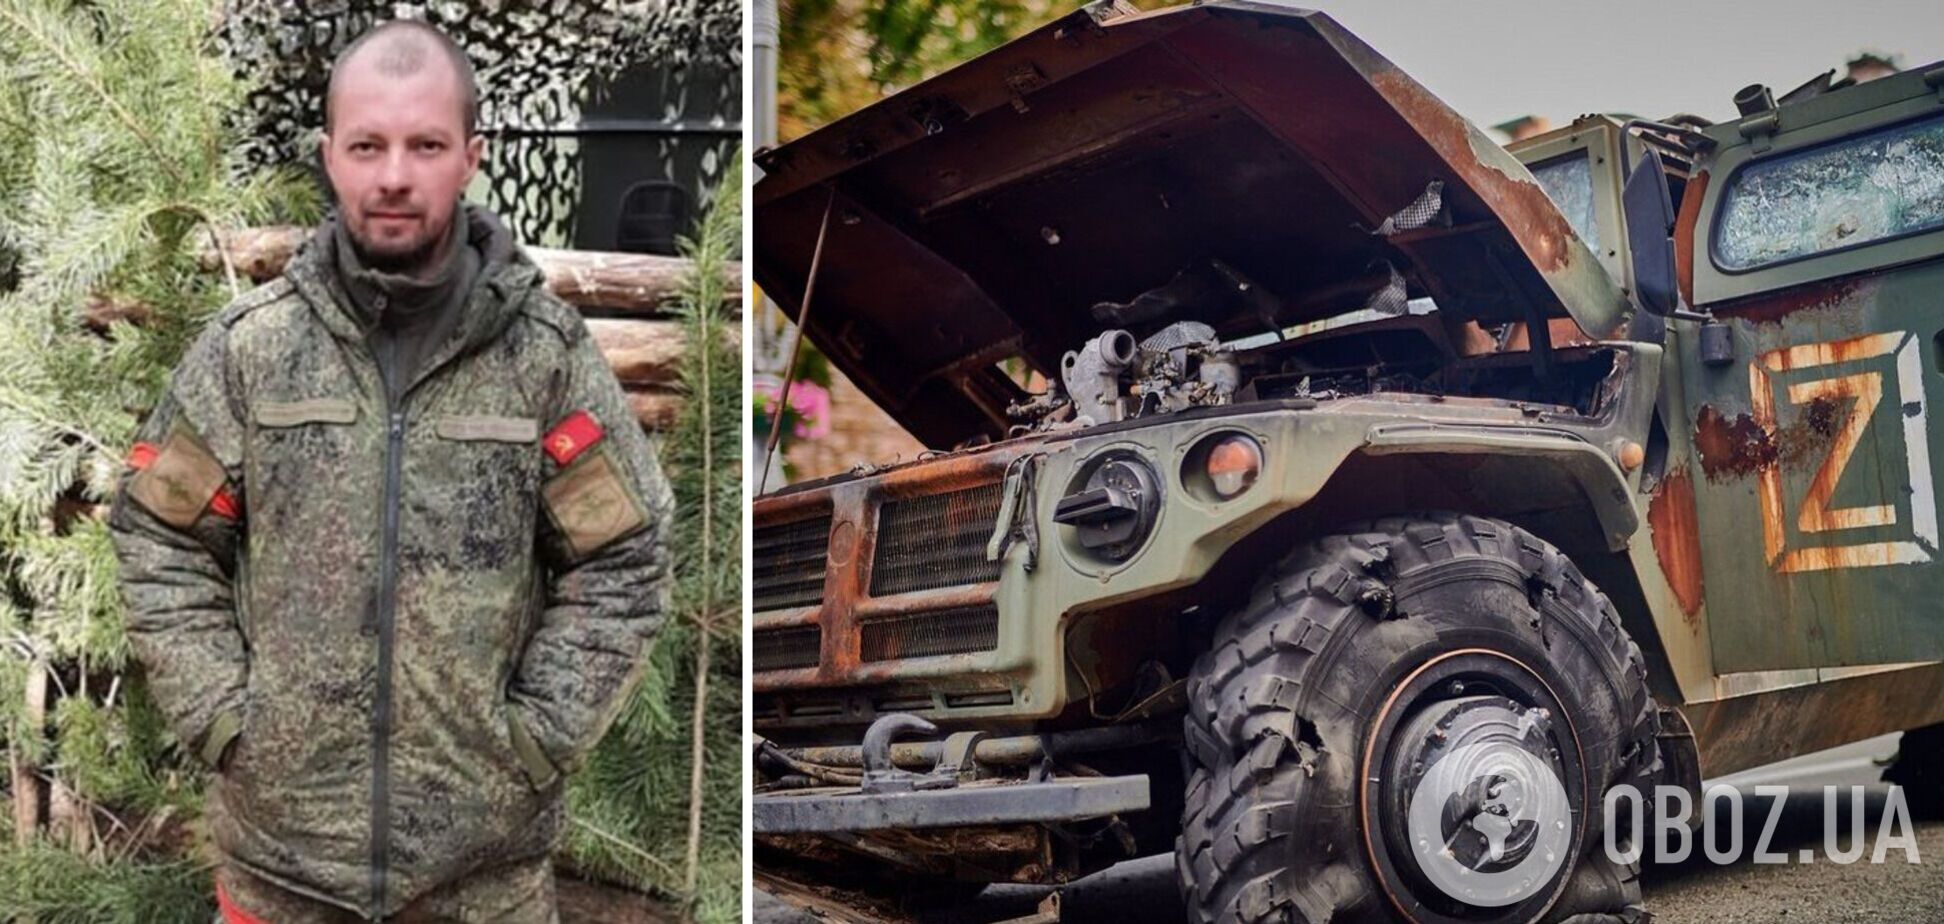 В Україні ліквідували начальника тилу реактивної артилерійської бригади РФ: був родом із Вольська. Фото 